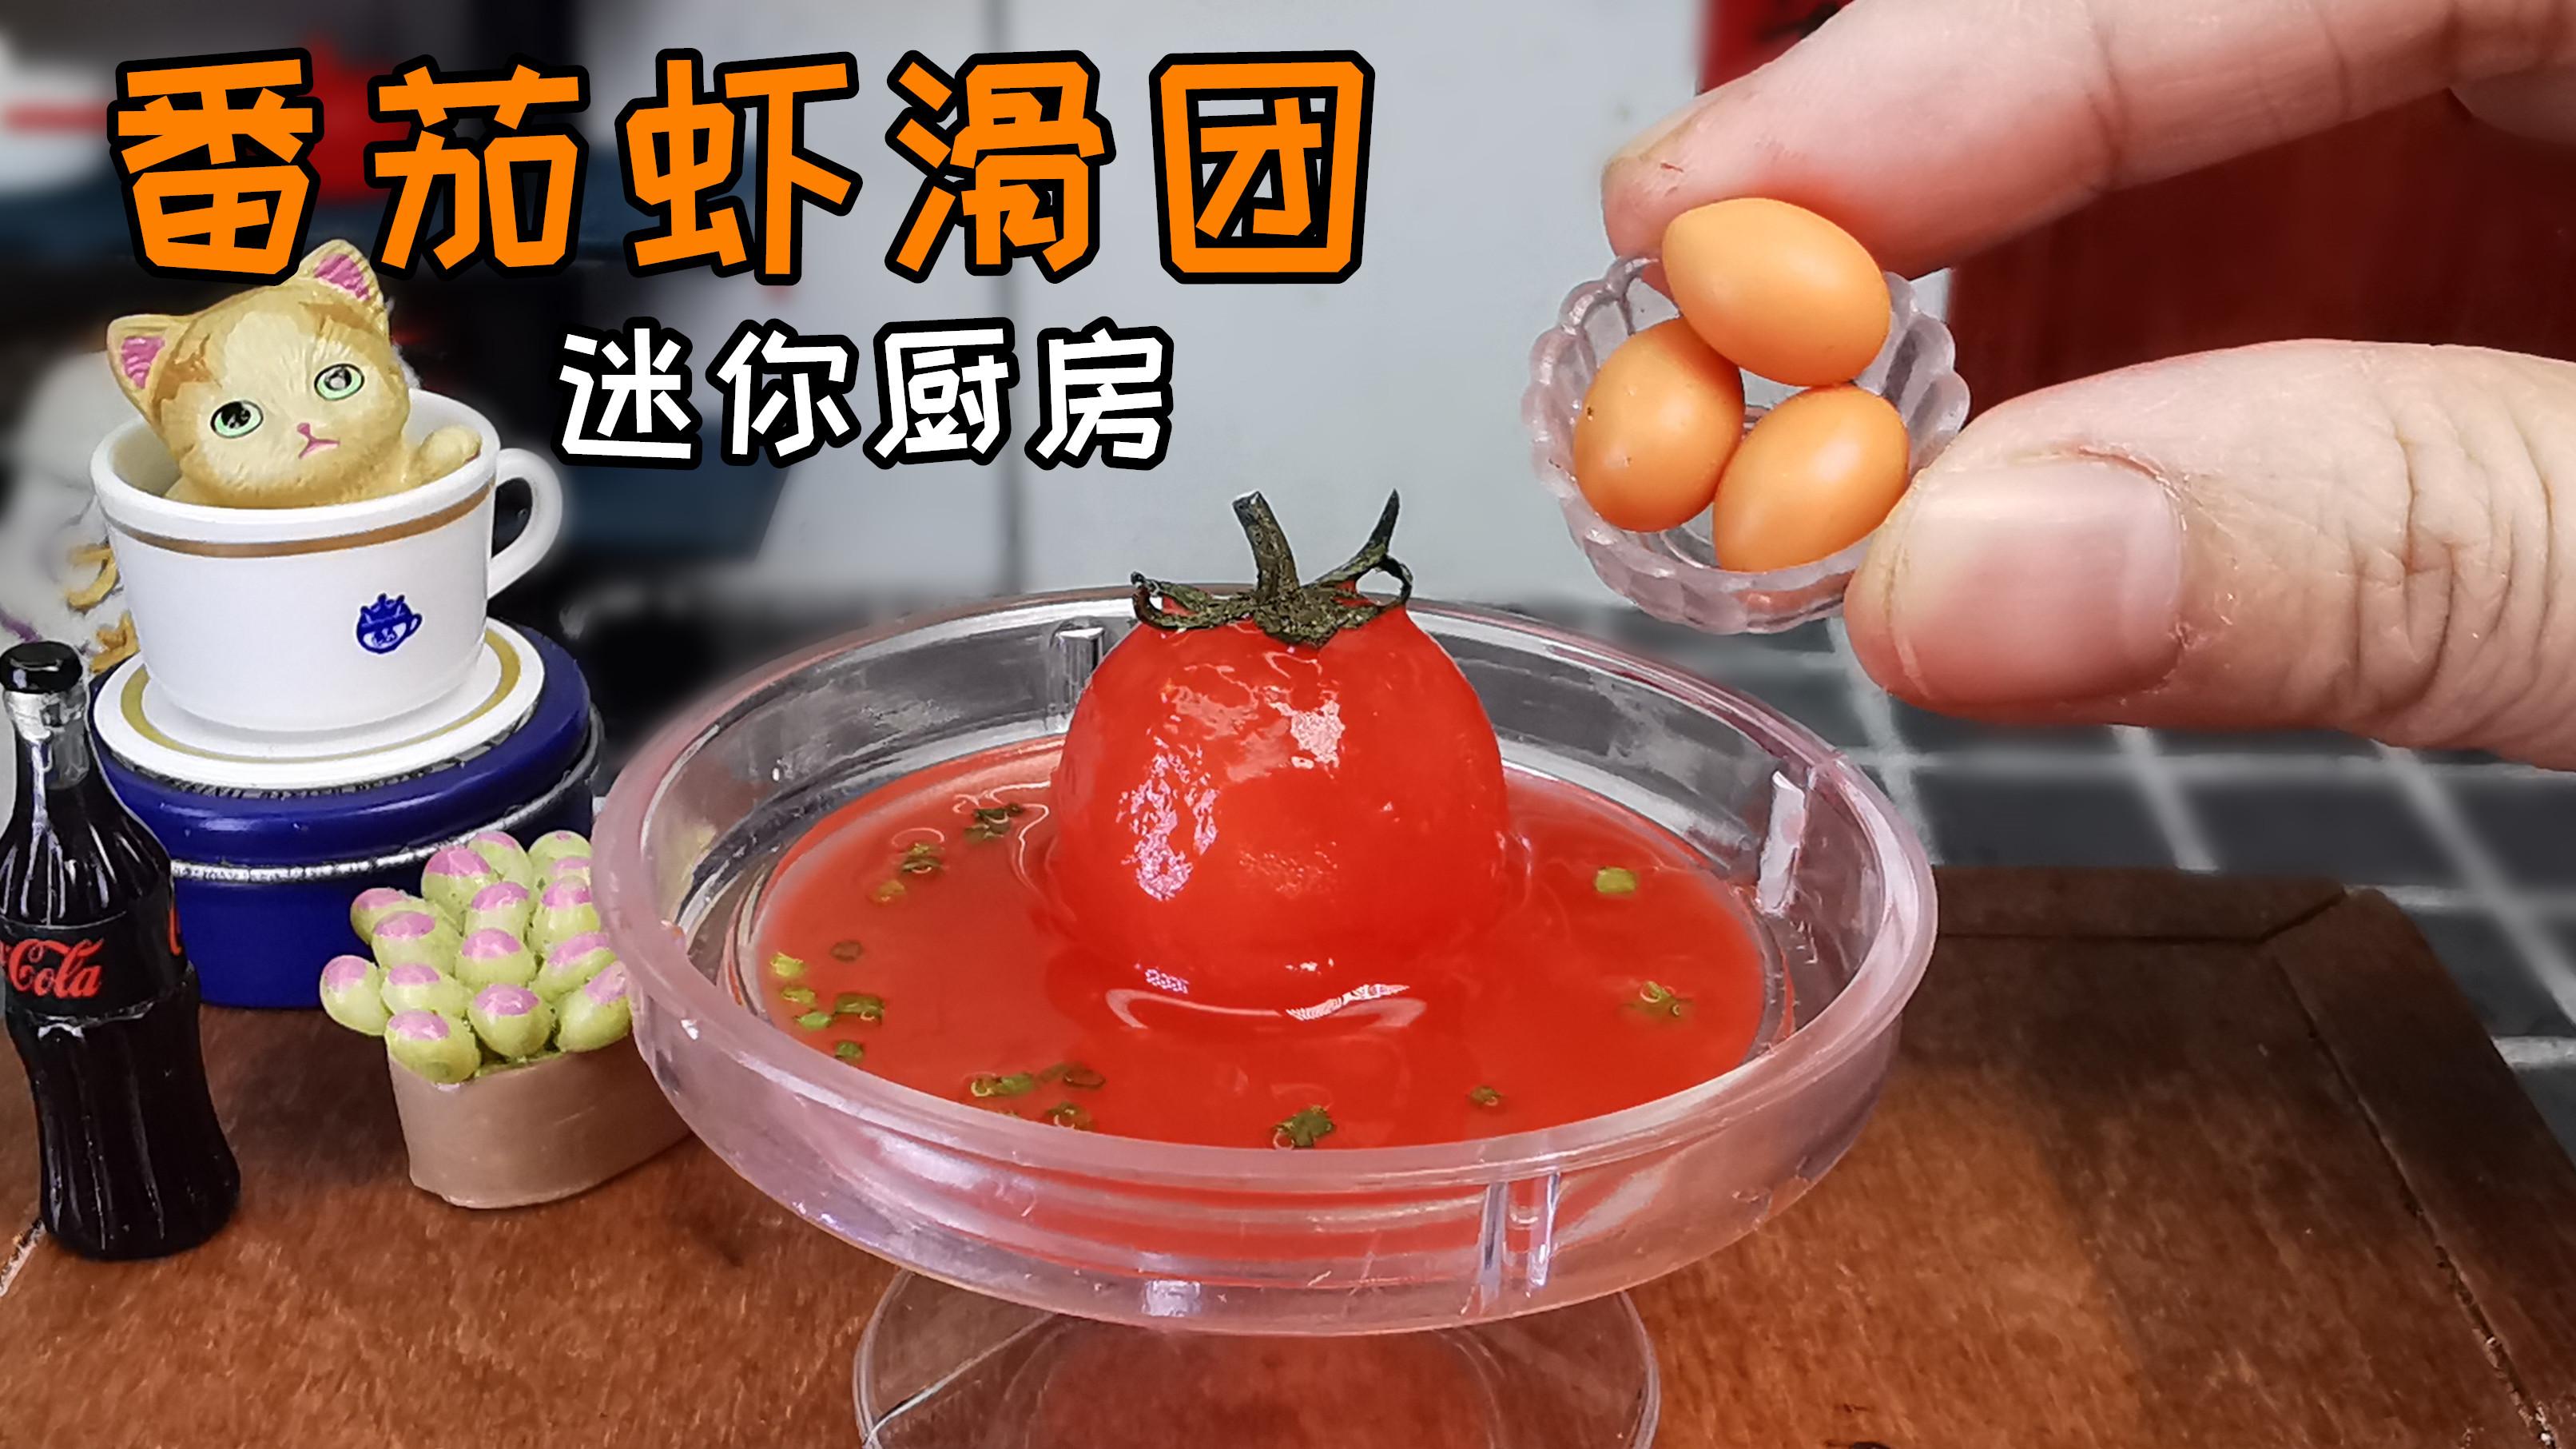 品味家中自制海鲜酸菜火锅：烹制技巧与食材选购详解